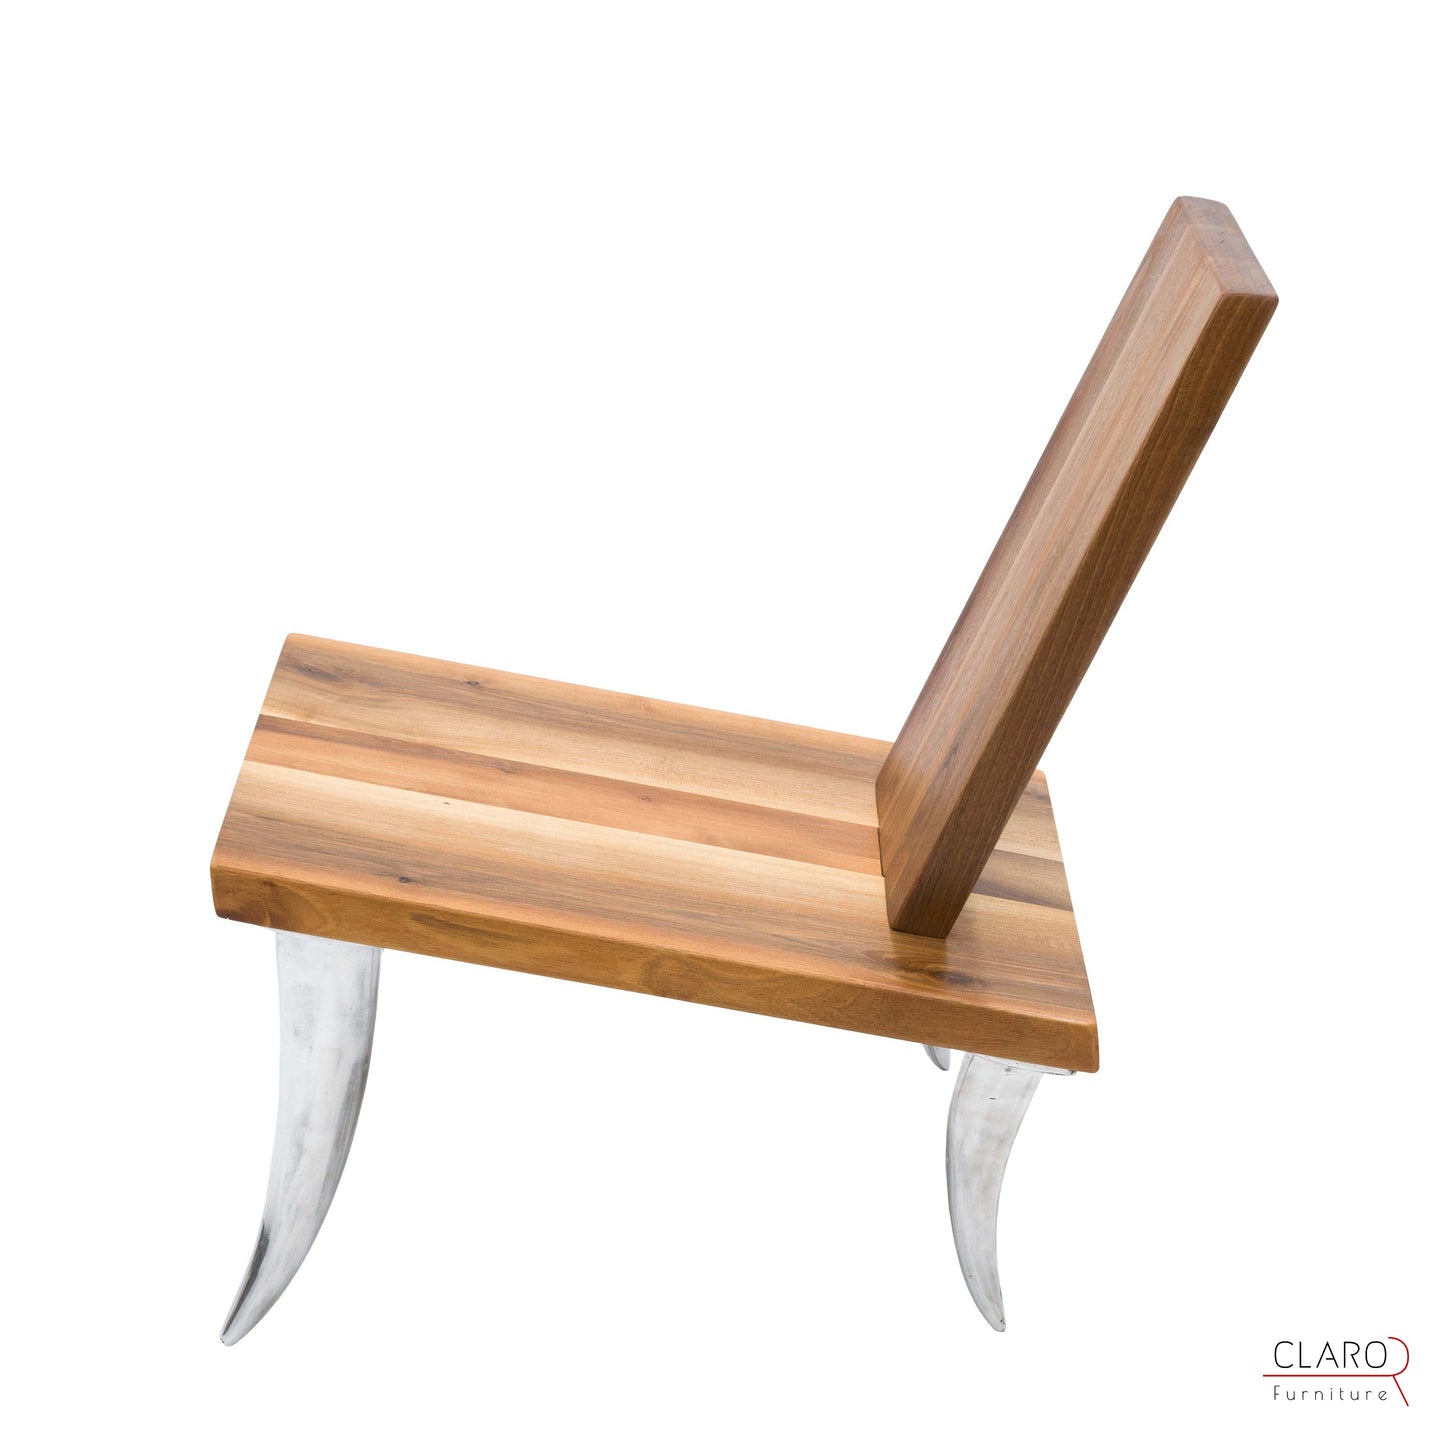 Designer Walnut Chair with Aluminum Legs